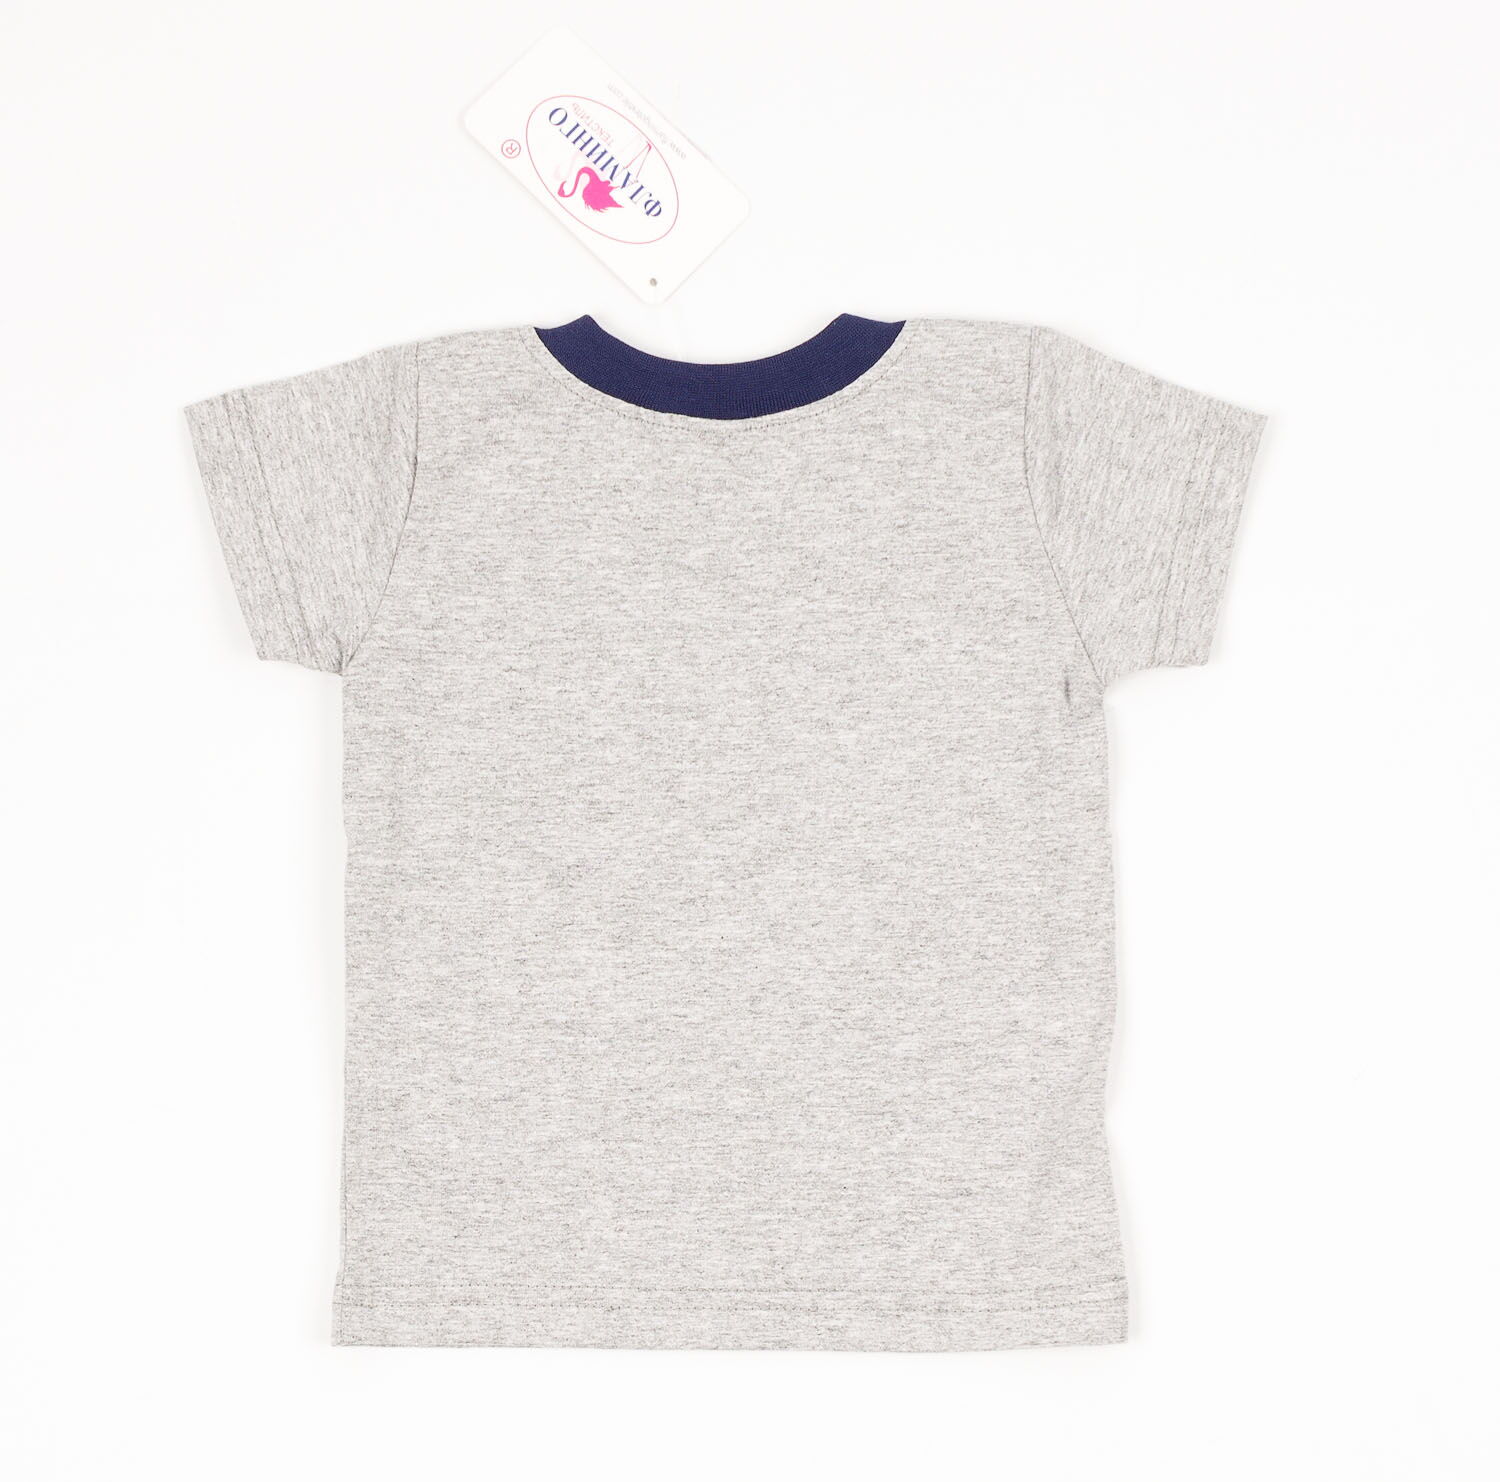 Комплект для мальчика (футболка+шорты) Фламинго серый 688-110 - фотография